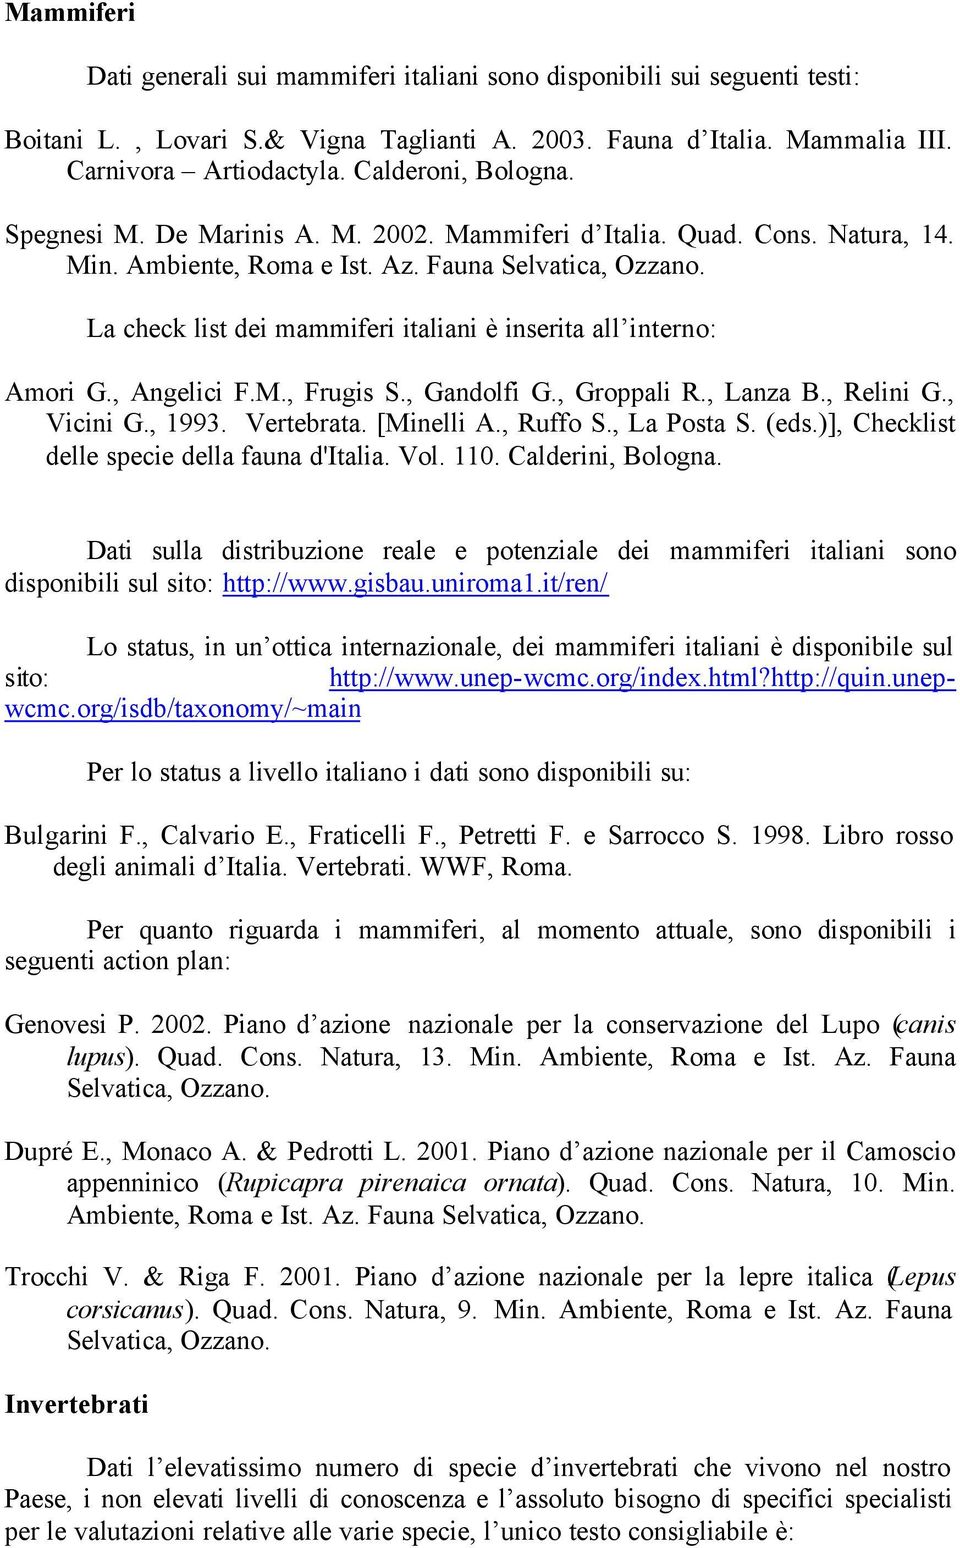 Fauna La check list dei mammiferi italiani è inserita all interno: Dati sulla distribuzione reale e potenziale dei mammiferi italiani sono disponibili sul sito: http://www.gisbau.uniroma1.